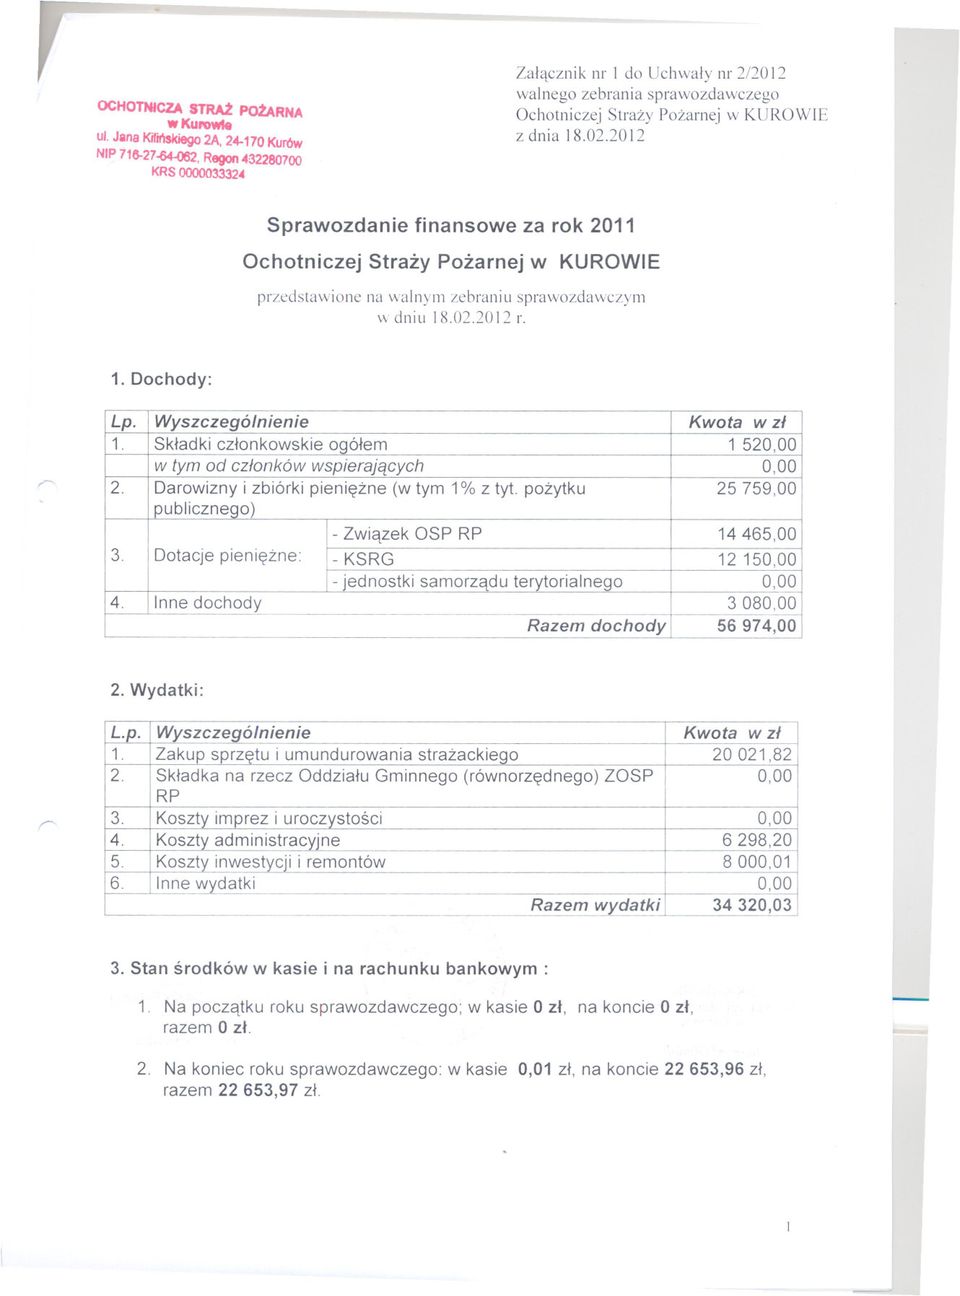 20 I2 Sprawozdanie finansowe za rok 2011 Ochotniczej Strazy Pozarnej w KUROWIE przedstawione na walnym zebraniu sprawozdawczym dniu 18.02.2012 r. 1. Dochody: Lp. Wyszczególnienie Kwota w zl 1.